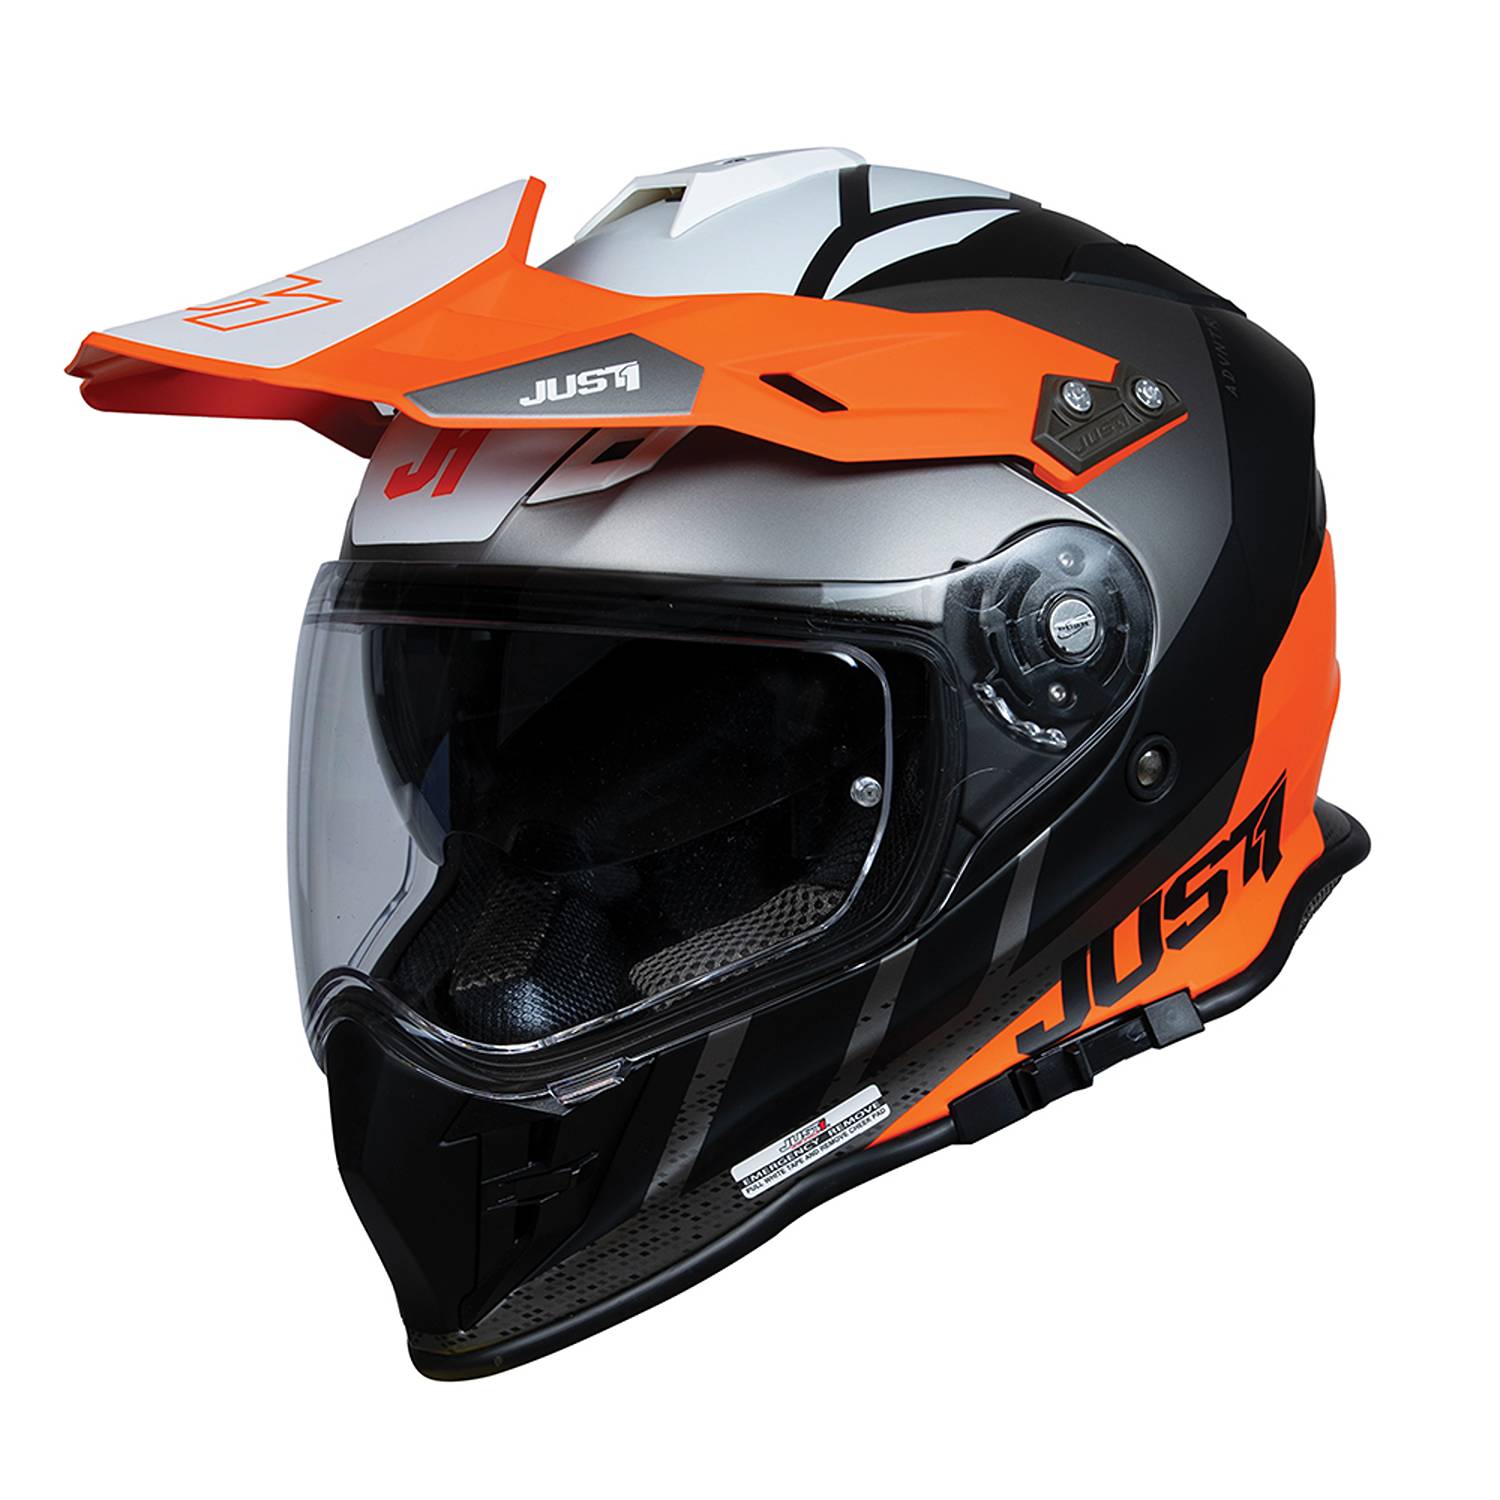 Image of Just1 J34 Pro Outerspace Orange Titanium Matt Adventure Helmet Size L EN